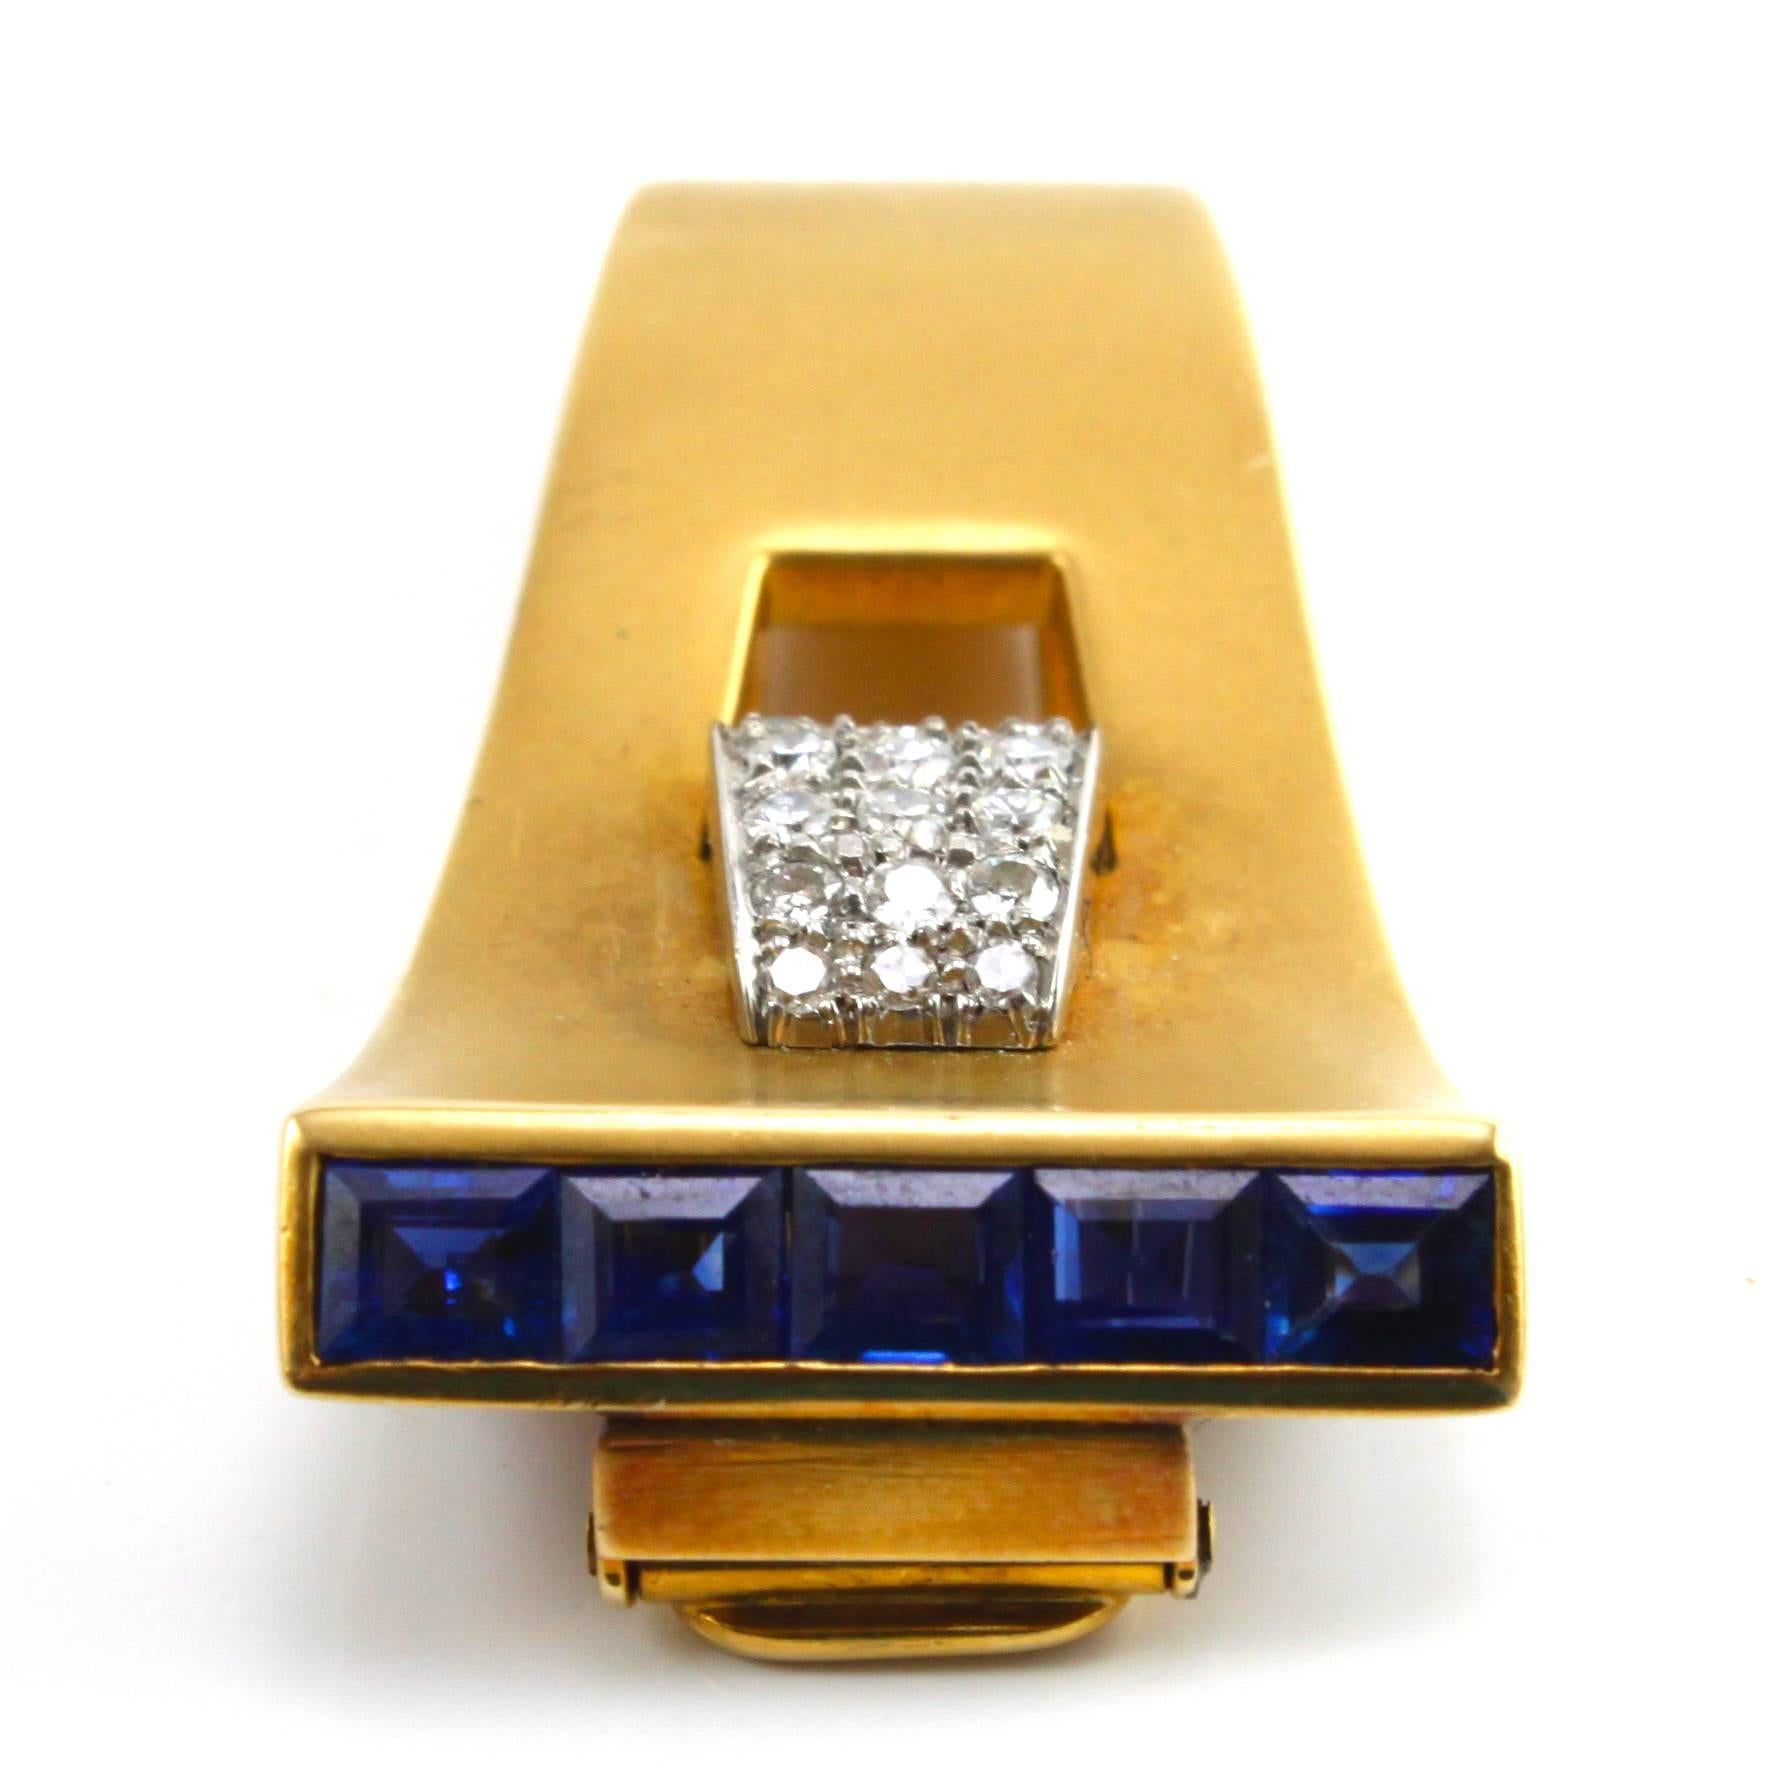 Eine sehr schlichte und elegante Saphir- und Diamant-Clip-Brosche aus den 1940er Jahren, die das typische Retro-Design zeigt.

Die Diamanten wiegen ca. 1 Karat und die Saphire ca. 1,5 Karat. Beide sind von ausgezeichneter Qualität.
